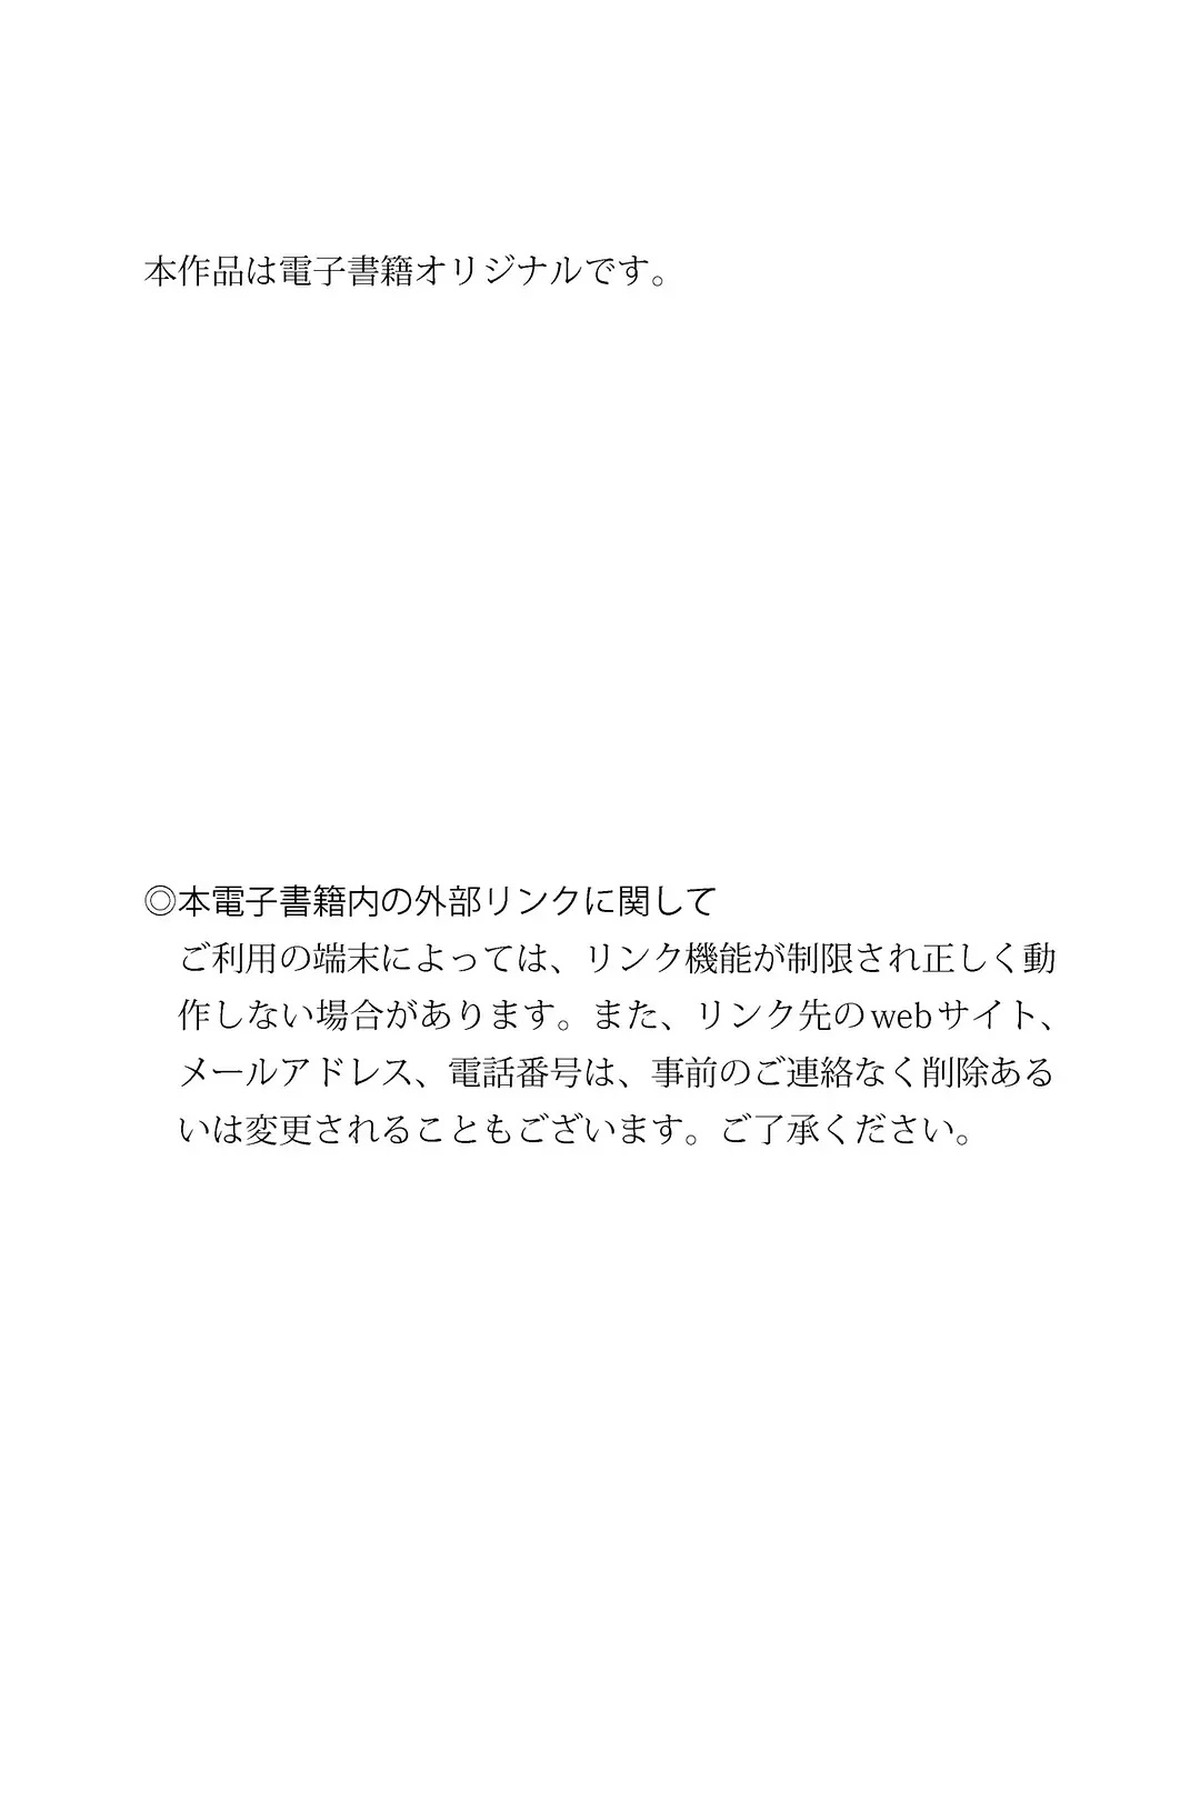 Digital Photobook 2022 11 22 Miyu Kaneko 金子みゆ White Graph 0054 8616461902.jpg